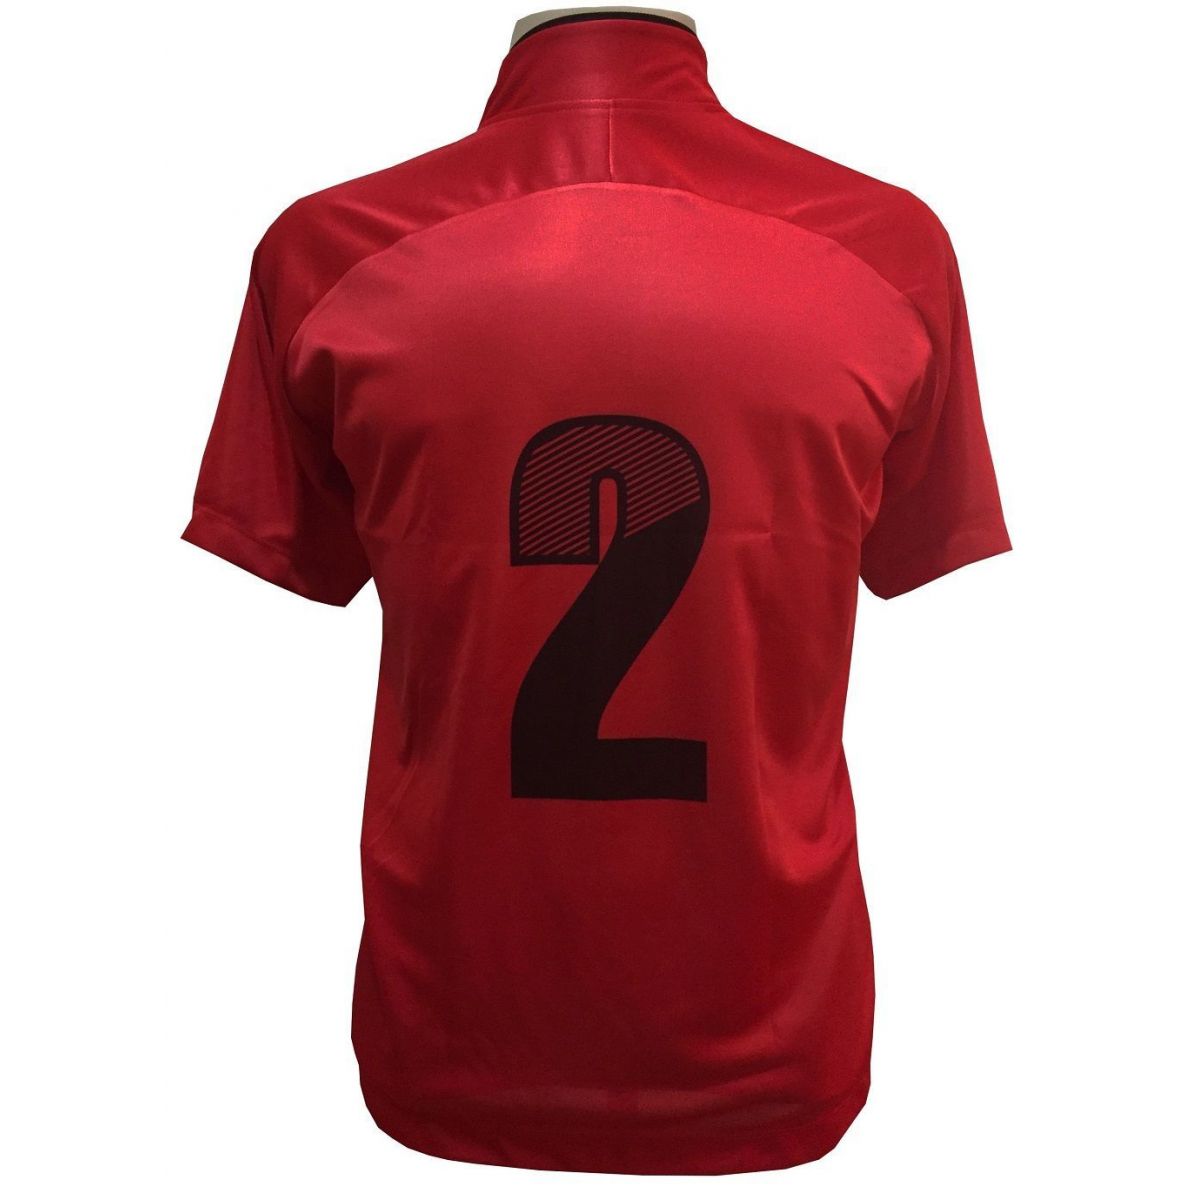 Uniforme Esportivo com 18 camisas modelo City Vermelho/Preto + 18 calções modelo Copa Preto/Vermelho + Brindes